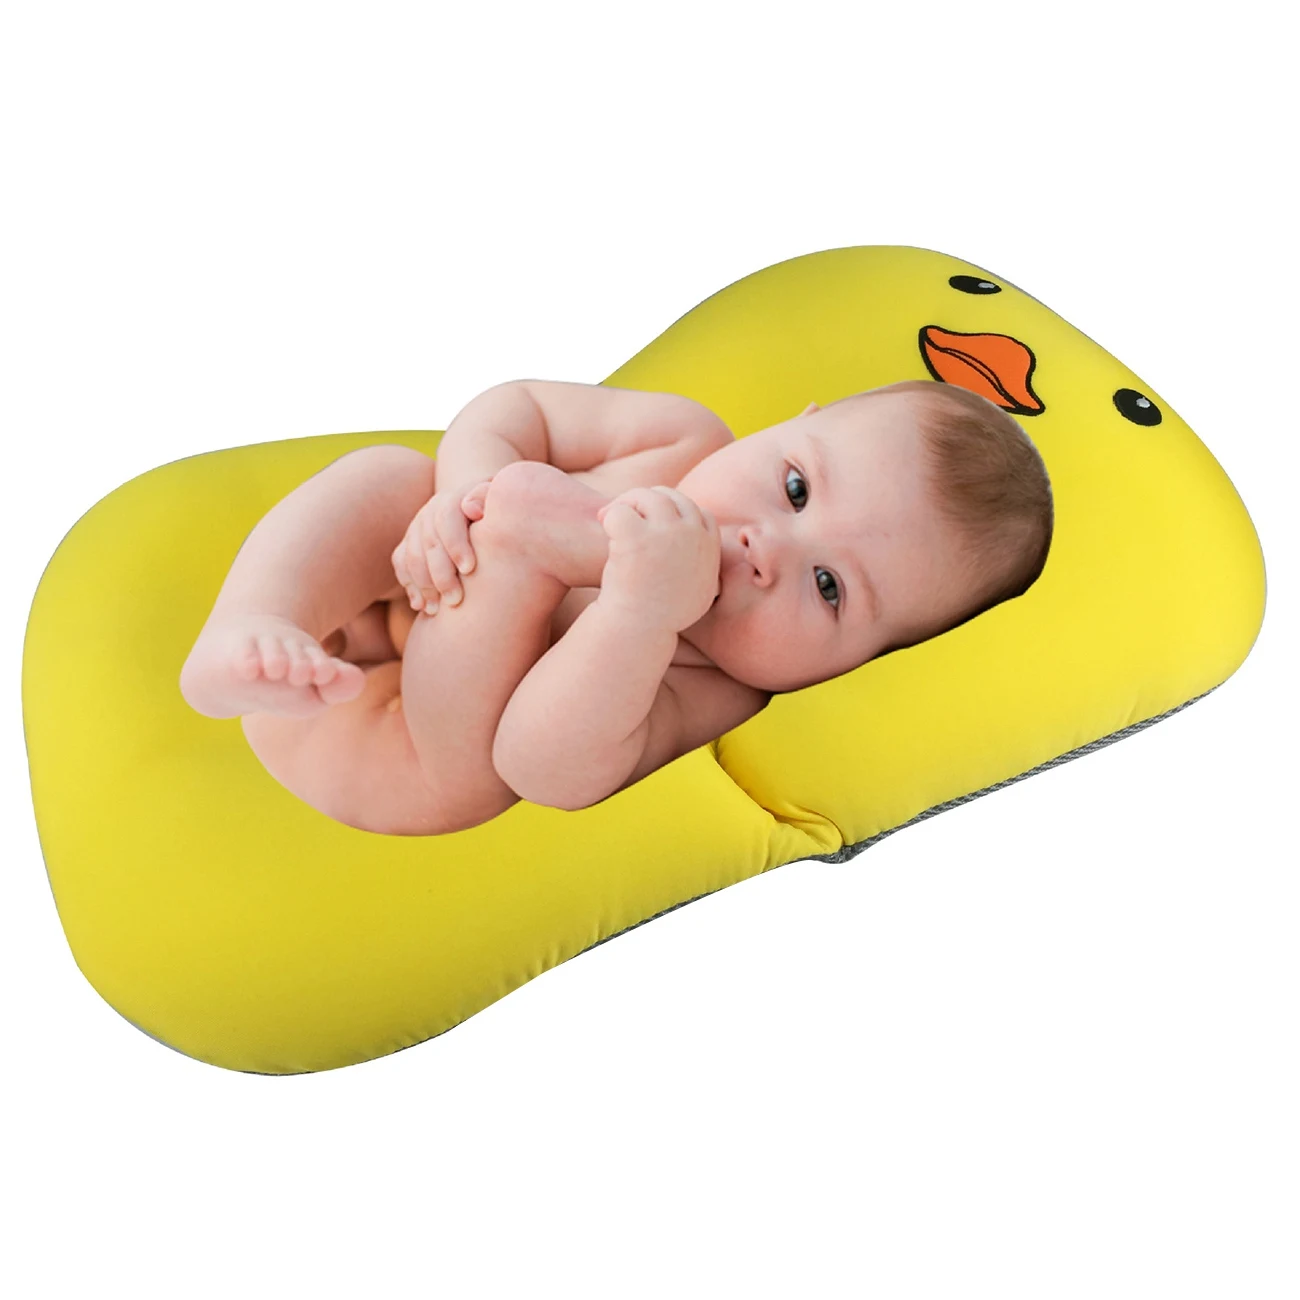 FBIL-Baby Shower Портативный воздушной подушке ванны младенца коврик нескользящий коврик для ванной душа ребенка сиденье кронштейн